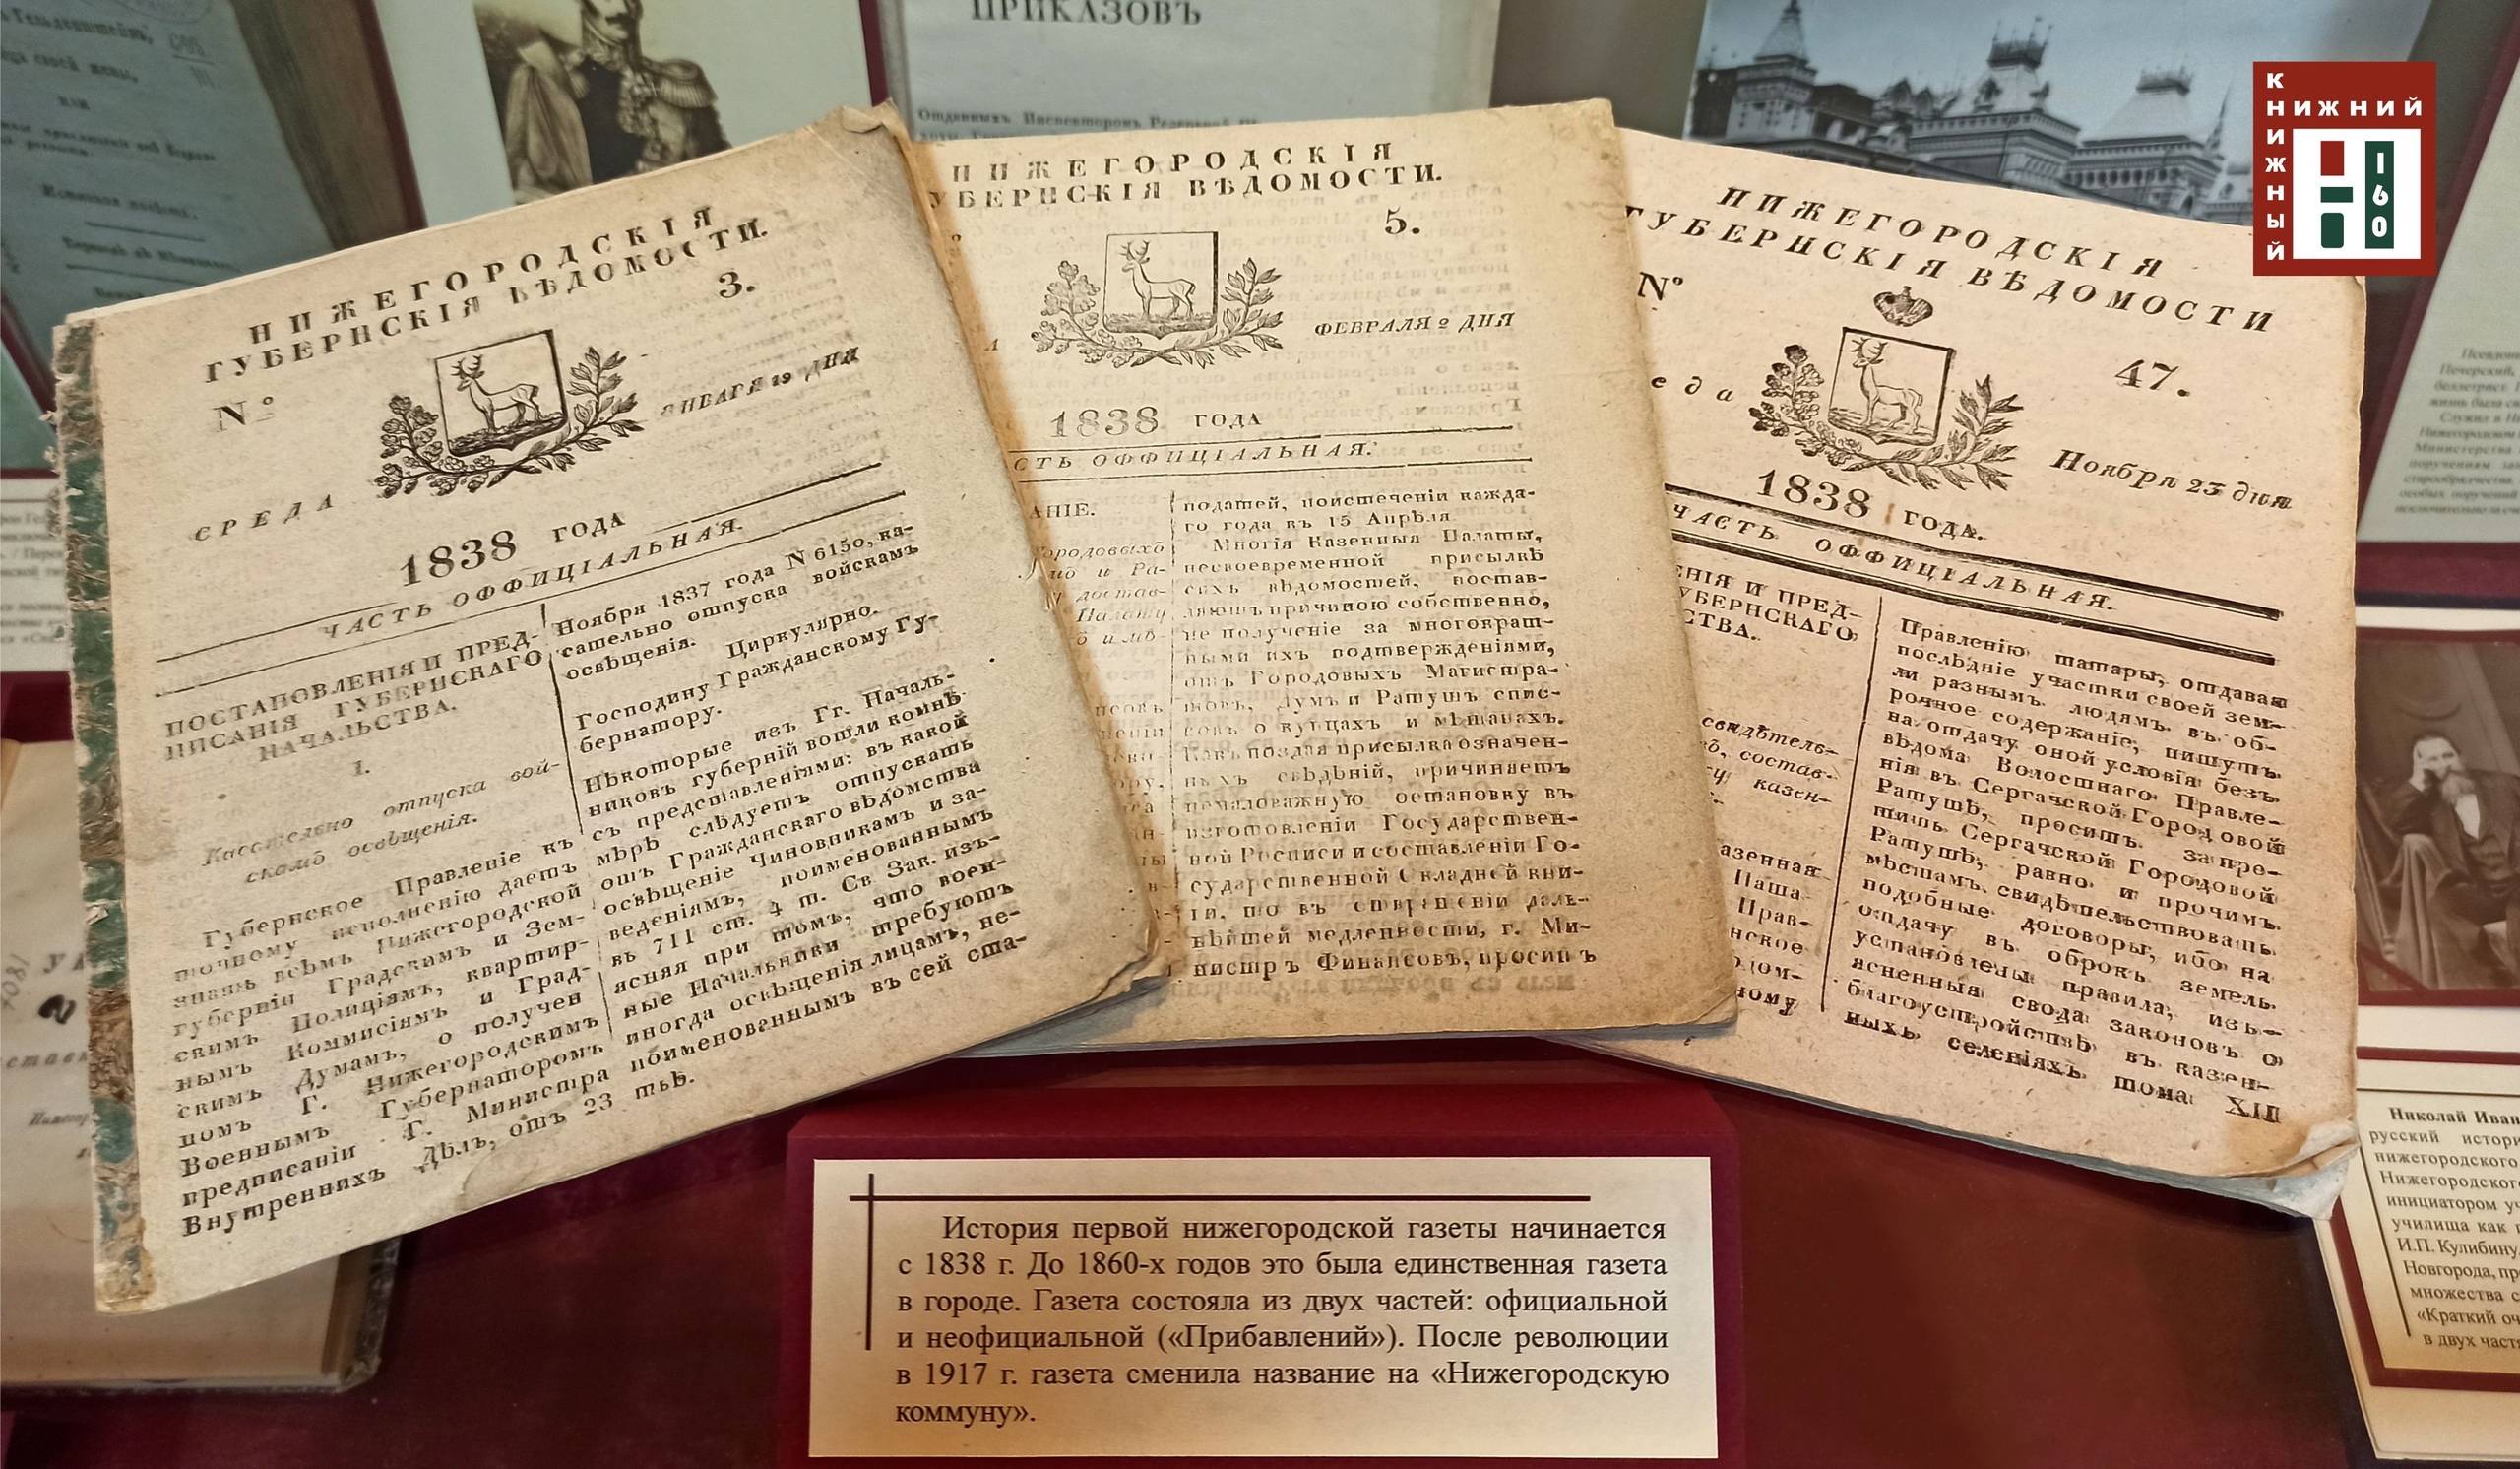 Раритетные издания представлены в Музее книги Нижегородской областной библиотеки им. В.И. Ленина